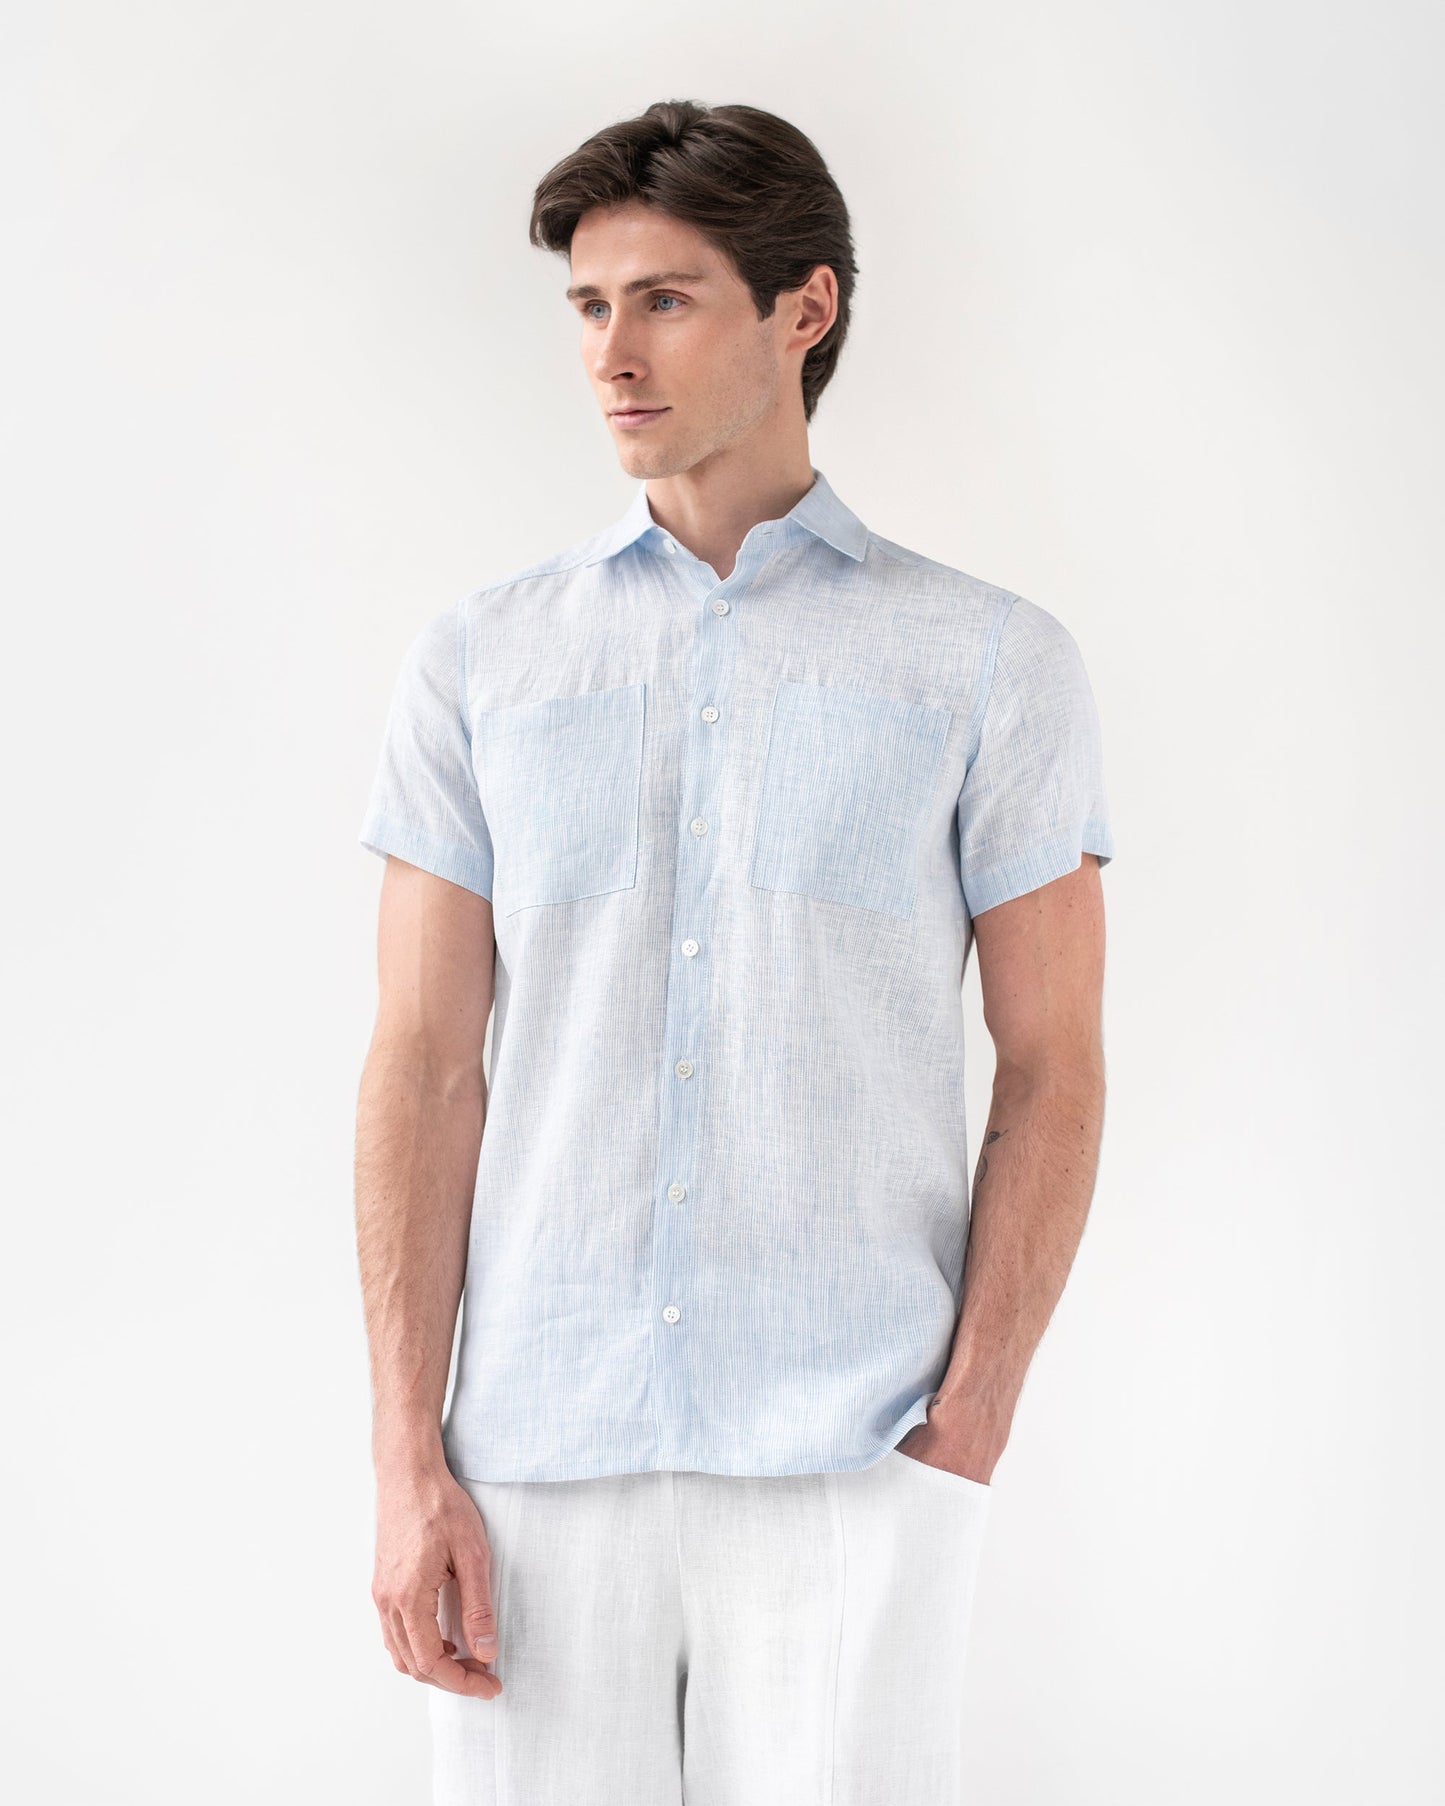 Short sleeves linen shirt PORTLAND in pinstripe blue - MagicLinen